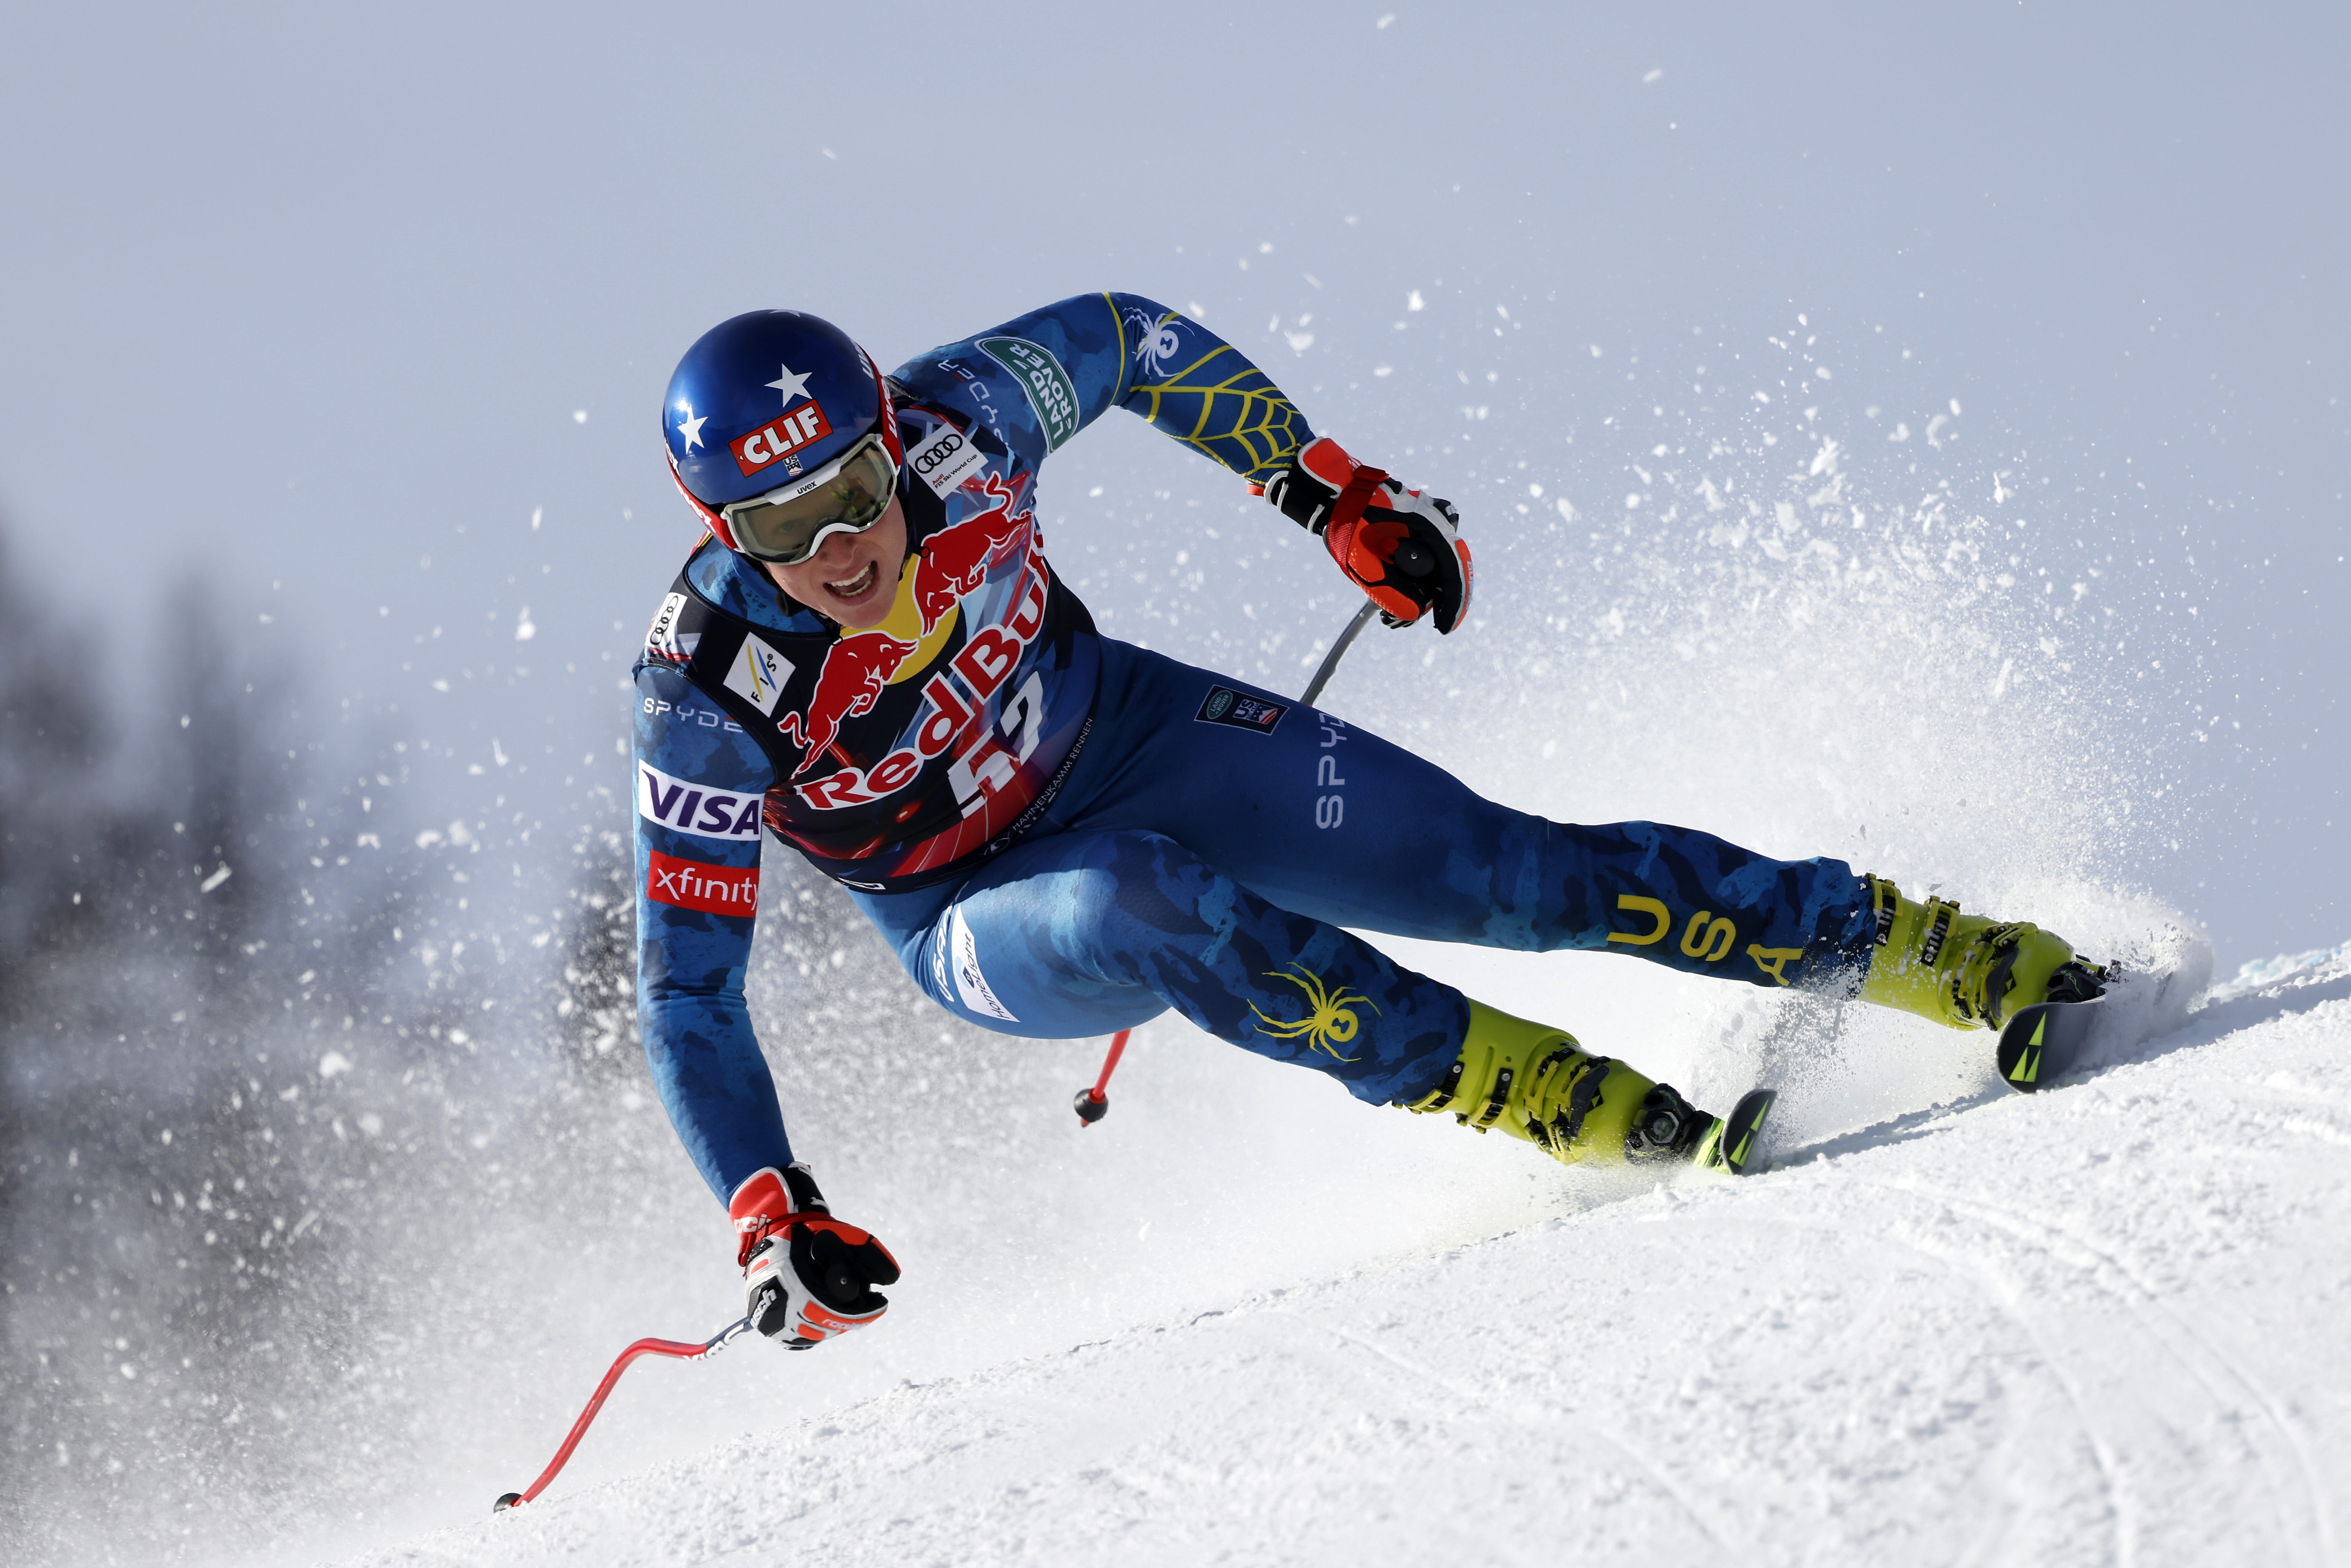 Ski Alpin heute live Wer zeigt / überträgt die Wettbewerbe dieses Wochenende? Goal Deutschland